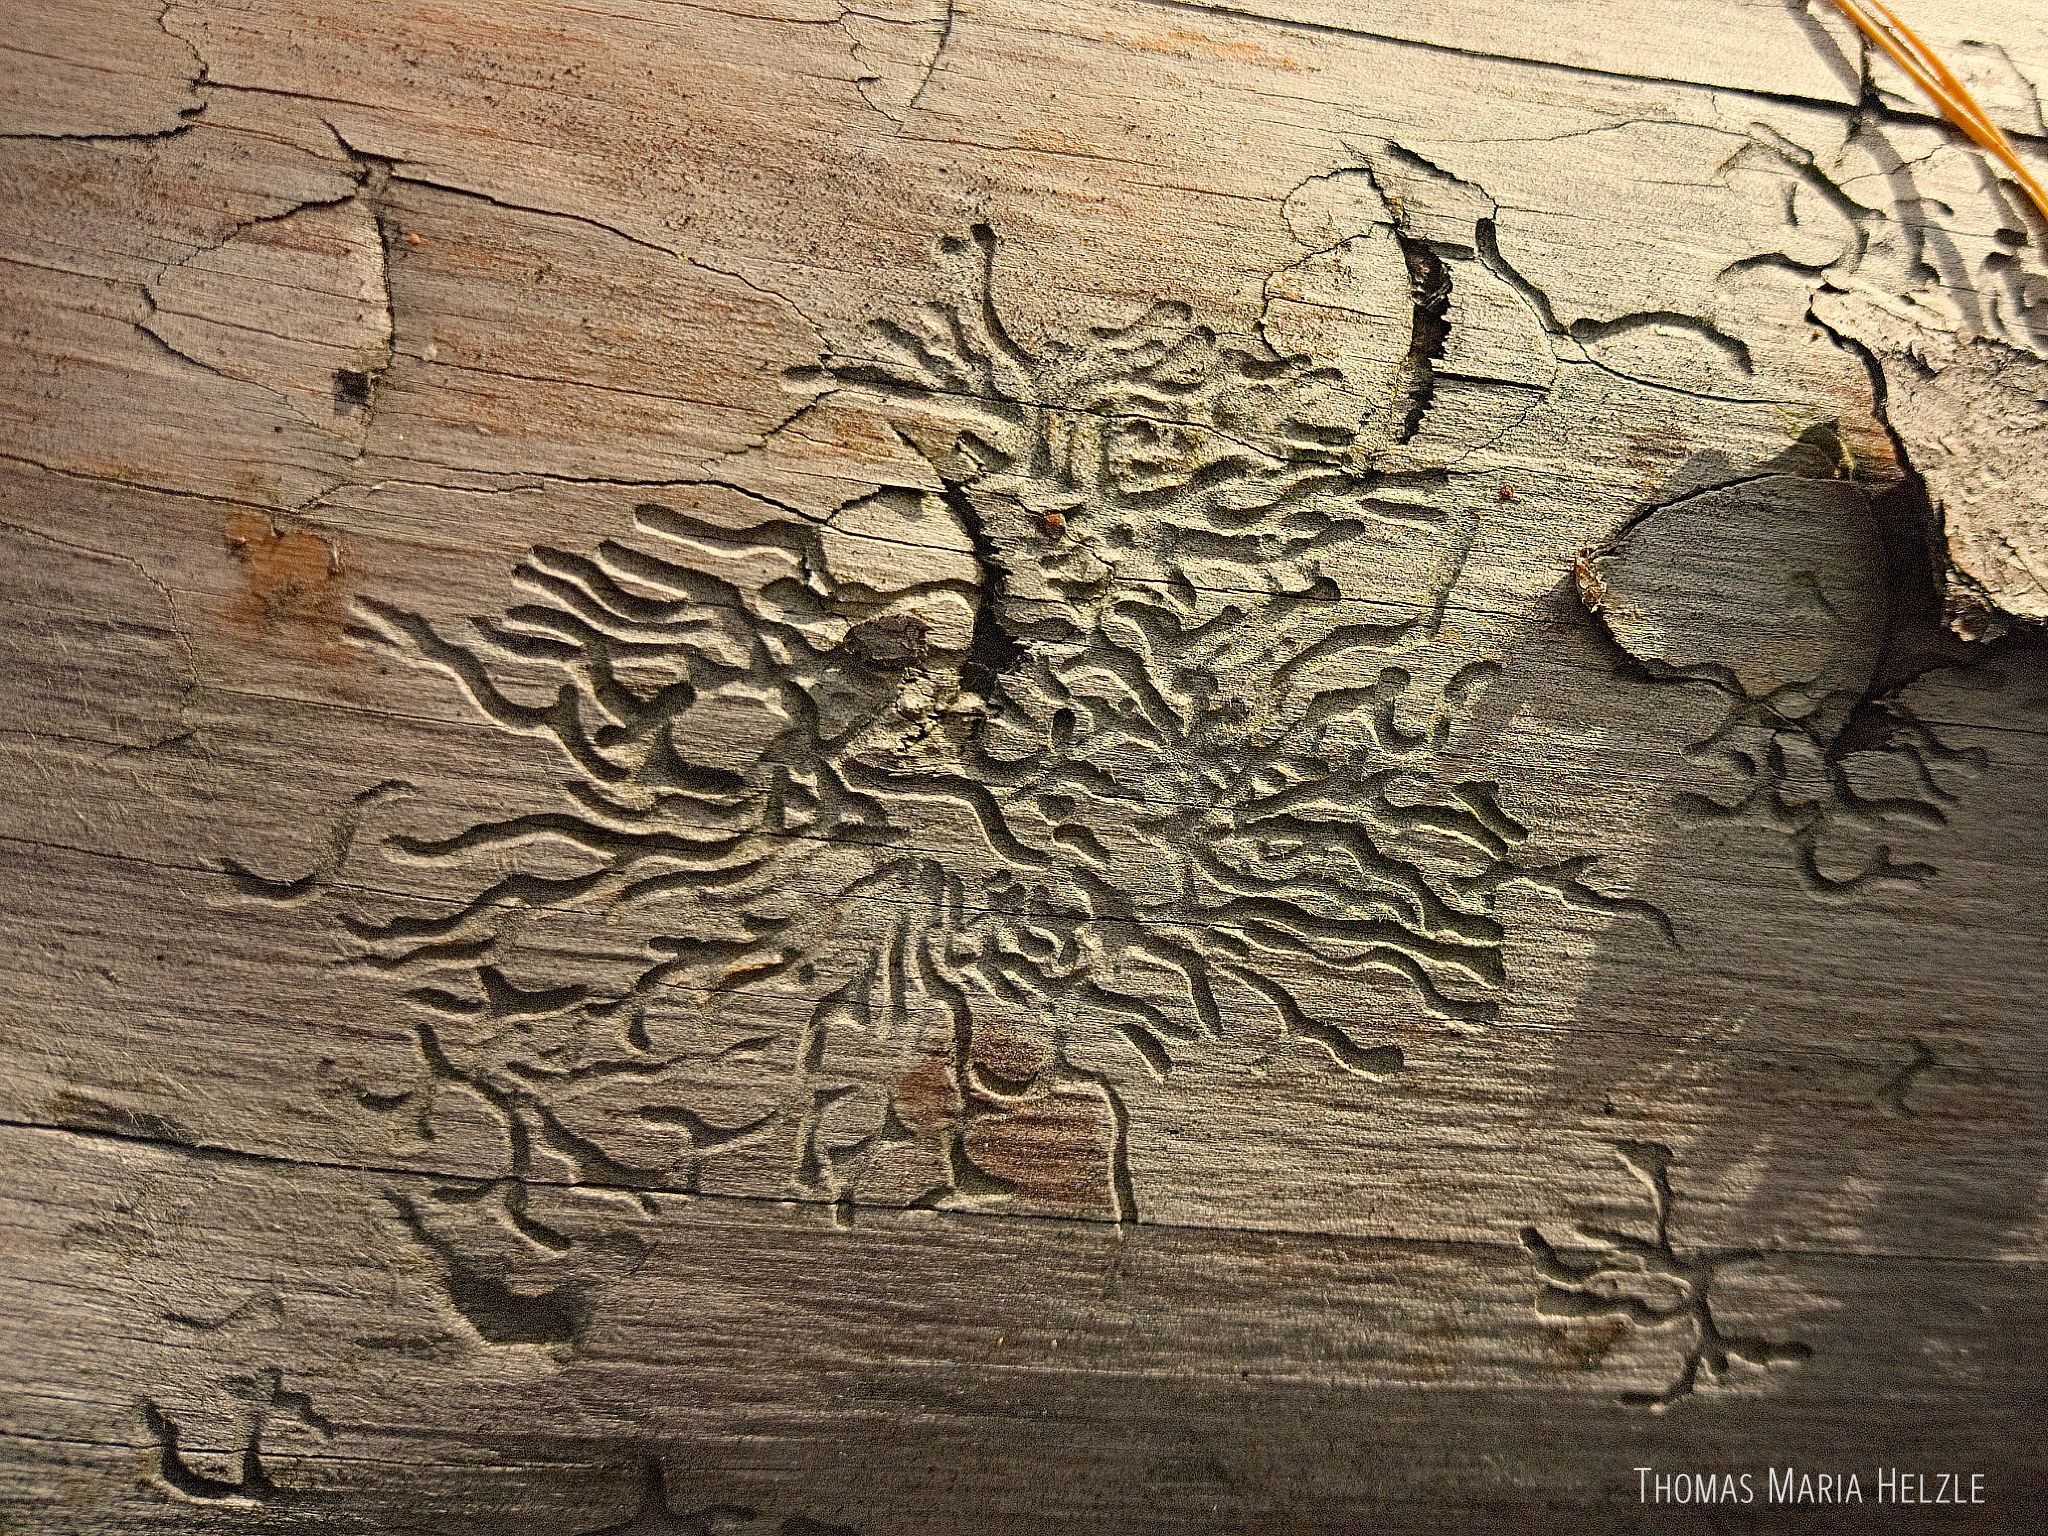 Nahaufnahme der Nagespuren von Holzwürmern auf einem Kiefernstamm. Sie bilden faszinierende Strukturen, die manchmal wie Schriftzeichen, manchmal wie organische Stadtpläne oder abstrakte Schnitzereien wirken.